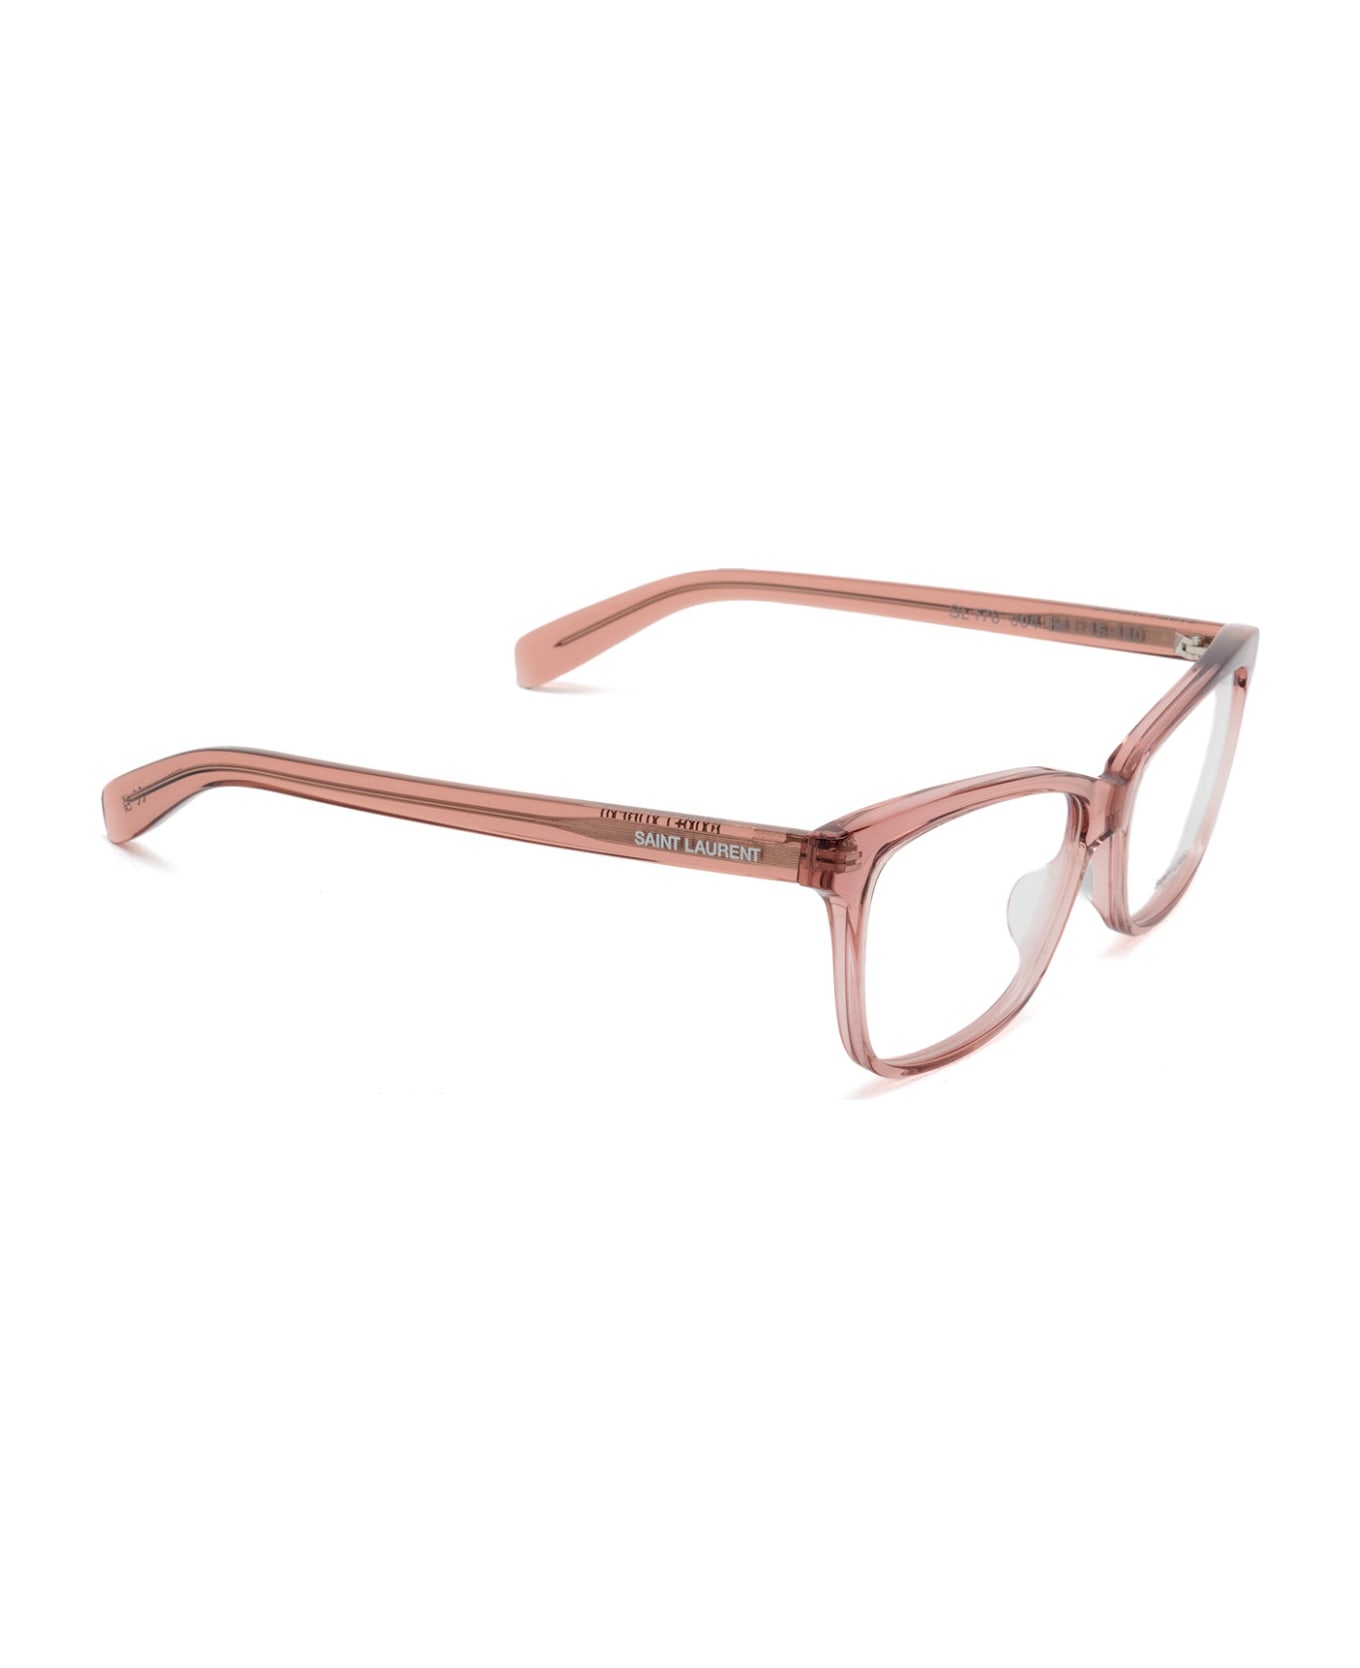 Saint Laurent Eyewear Sl 170 Nude Glasses - Nude アイウェア